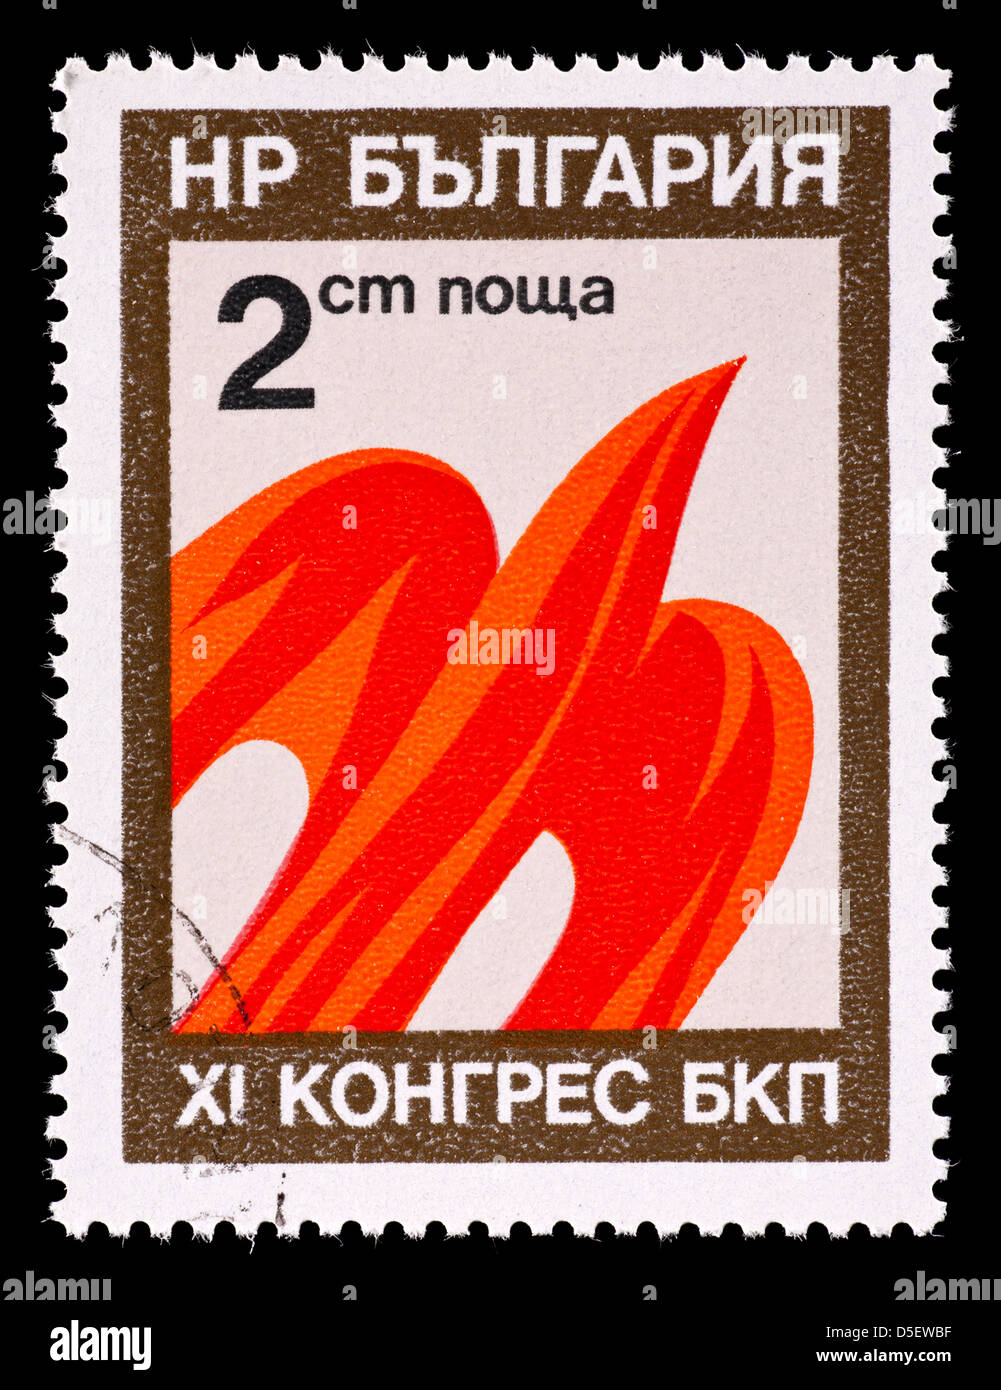 Timbre-poste de la Bulgarie représentant un oiseau stylisé, émis pour le 11 ème congrès du Parti communiste bulgare. Banque D'Images